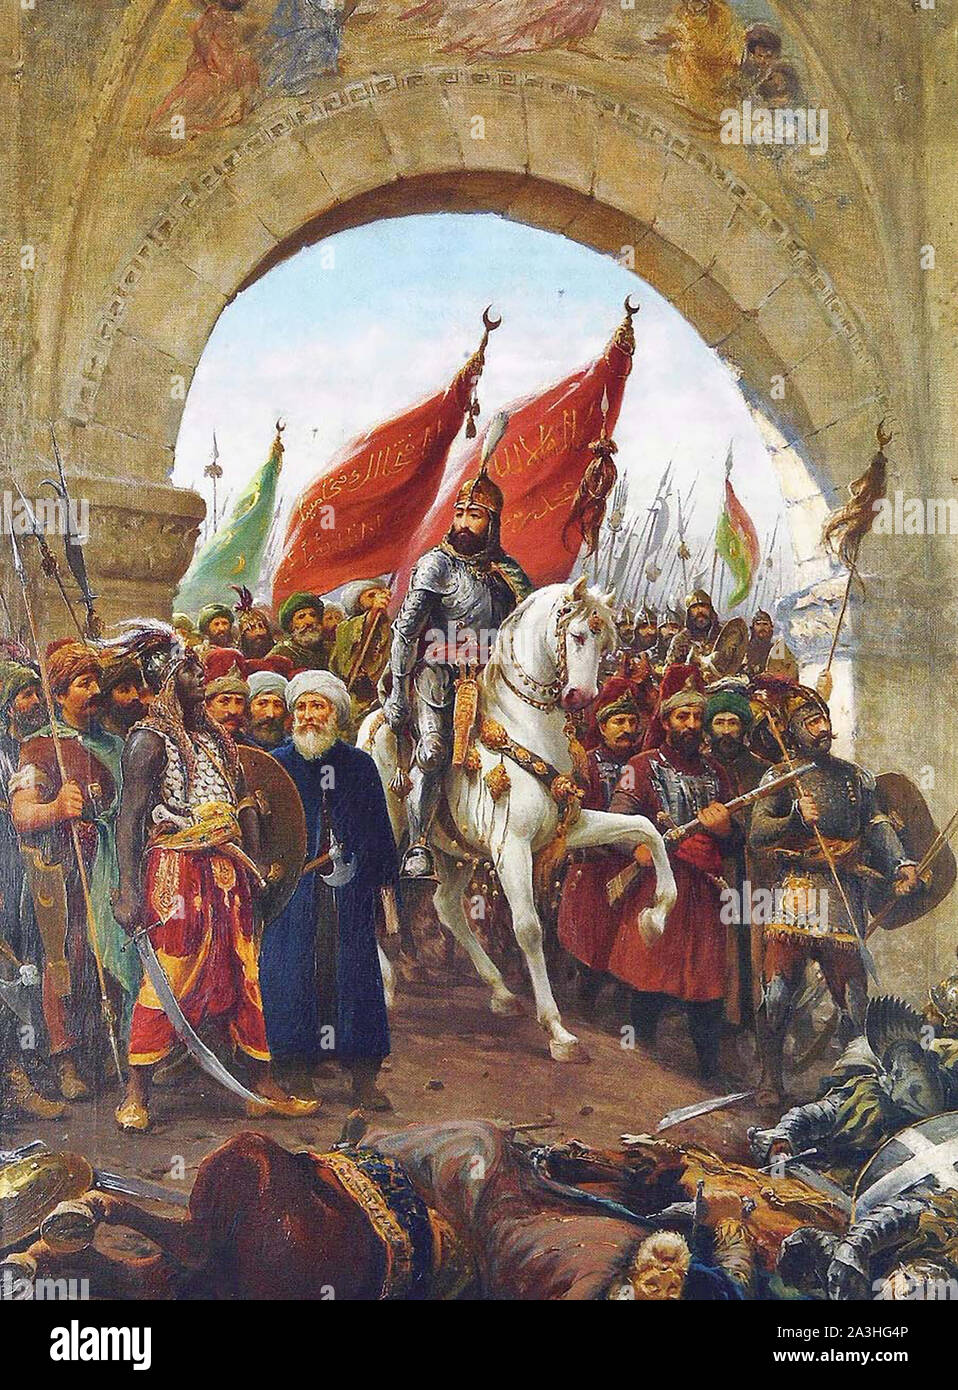 MEHMED II il conquistatore (1432-1481) sultano ottomano mostrato entrando in Costantinopoli nel 1453 come immaginato da artista italiano Fausto Zonaro Foto Stock